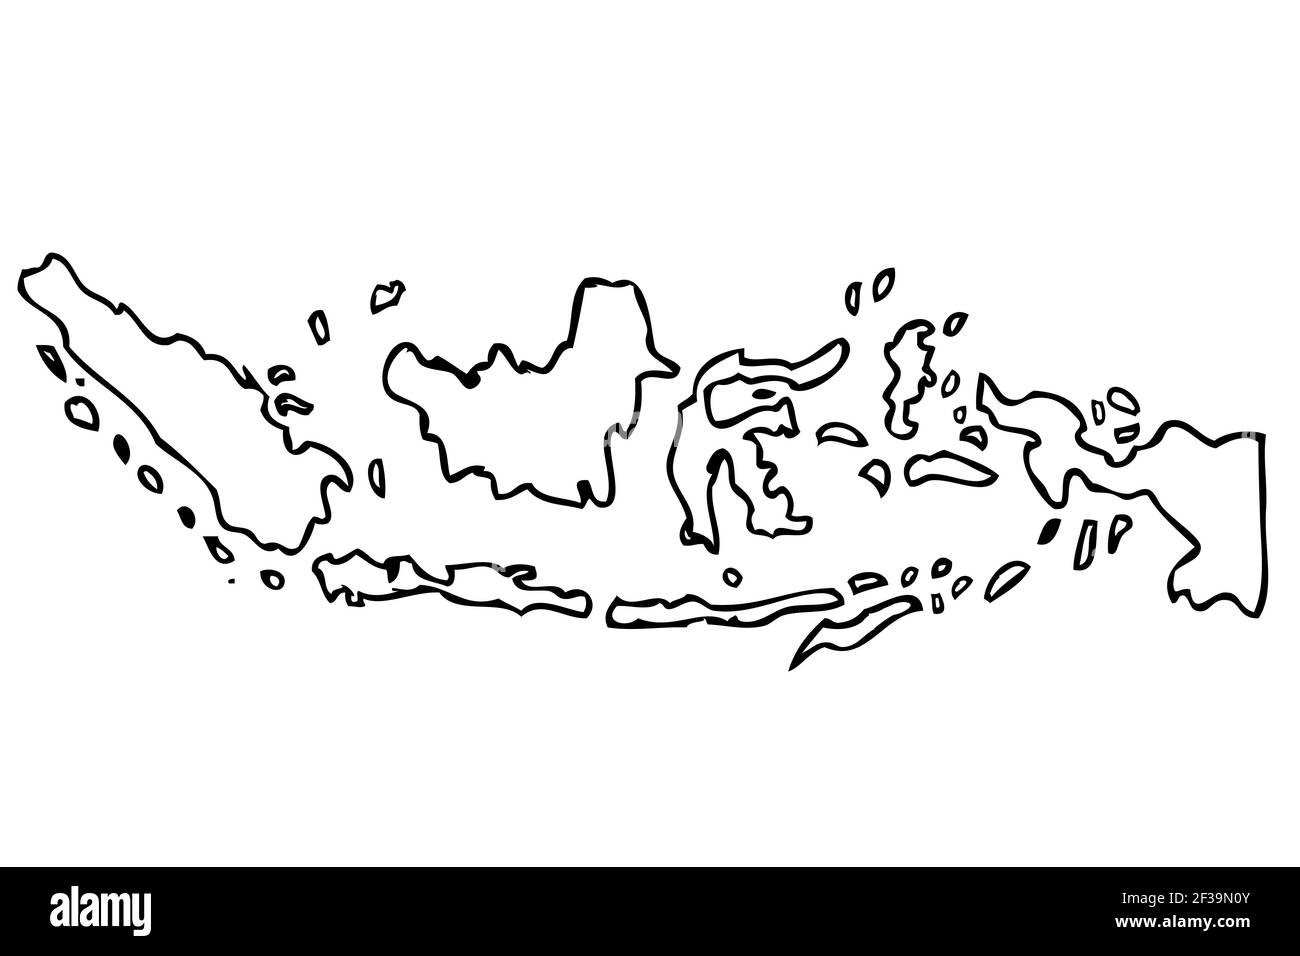 Handzeichnung Skizze Skizze Skizze Karte Indonesien, isoliert auf Weiß Stock Vektor